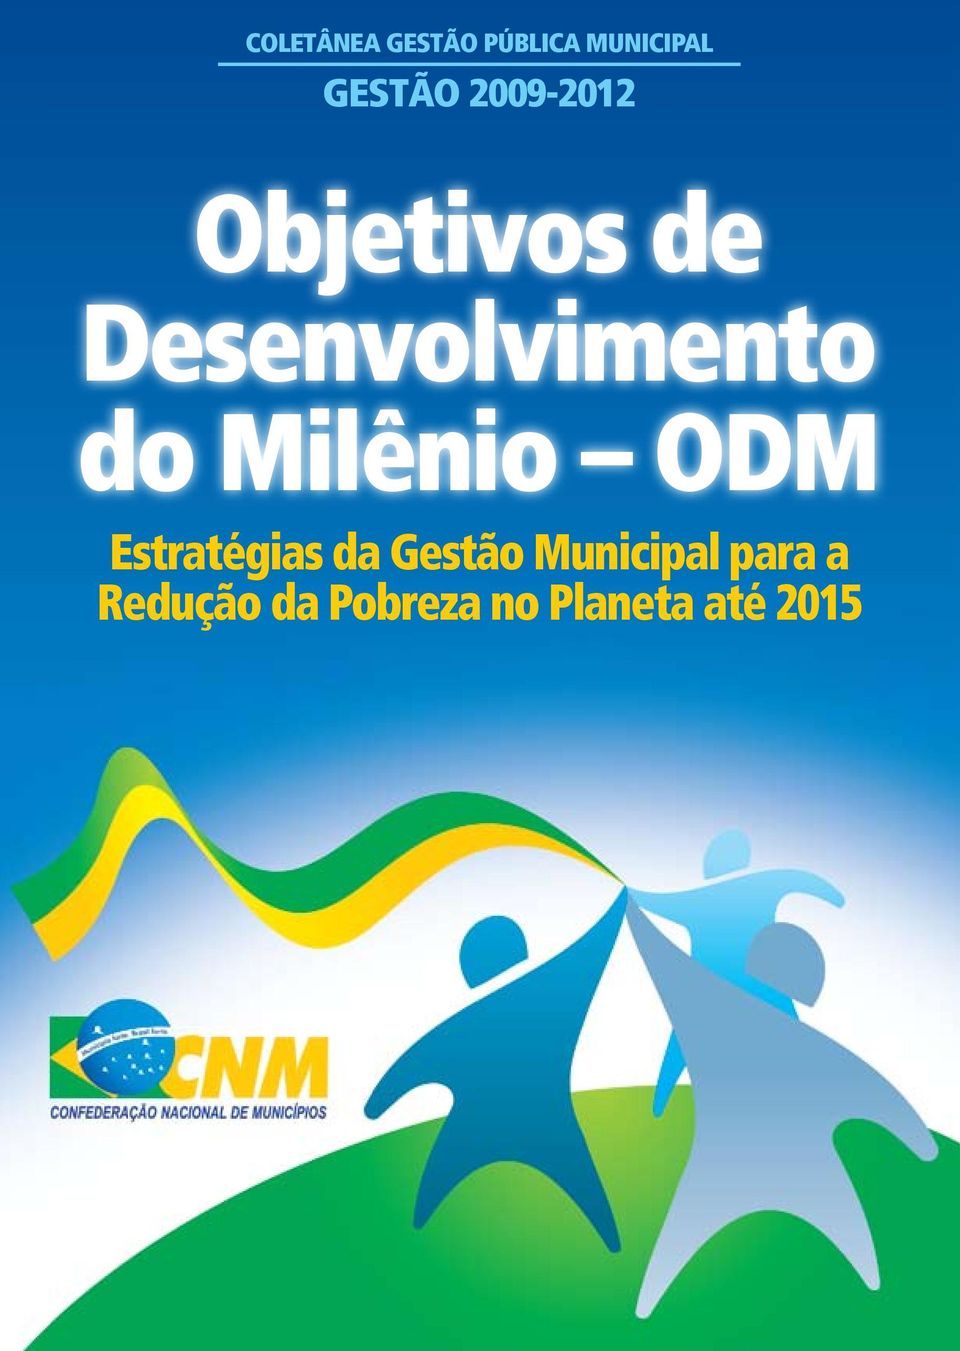 Milênio ODM Estratégias da Gestão Municipal